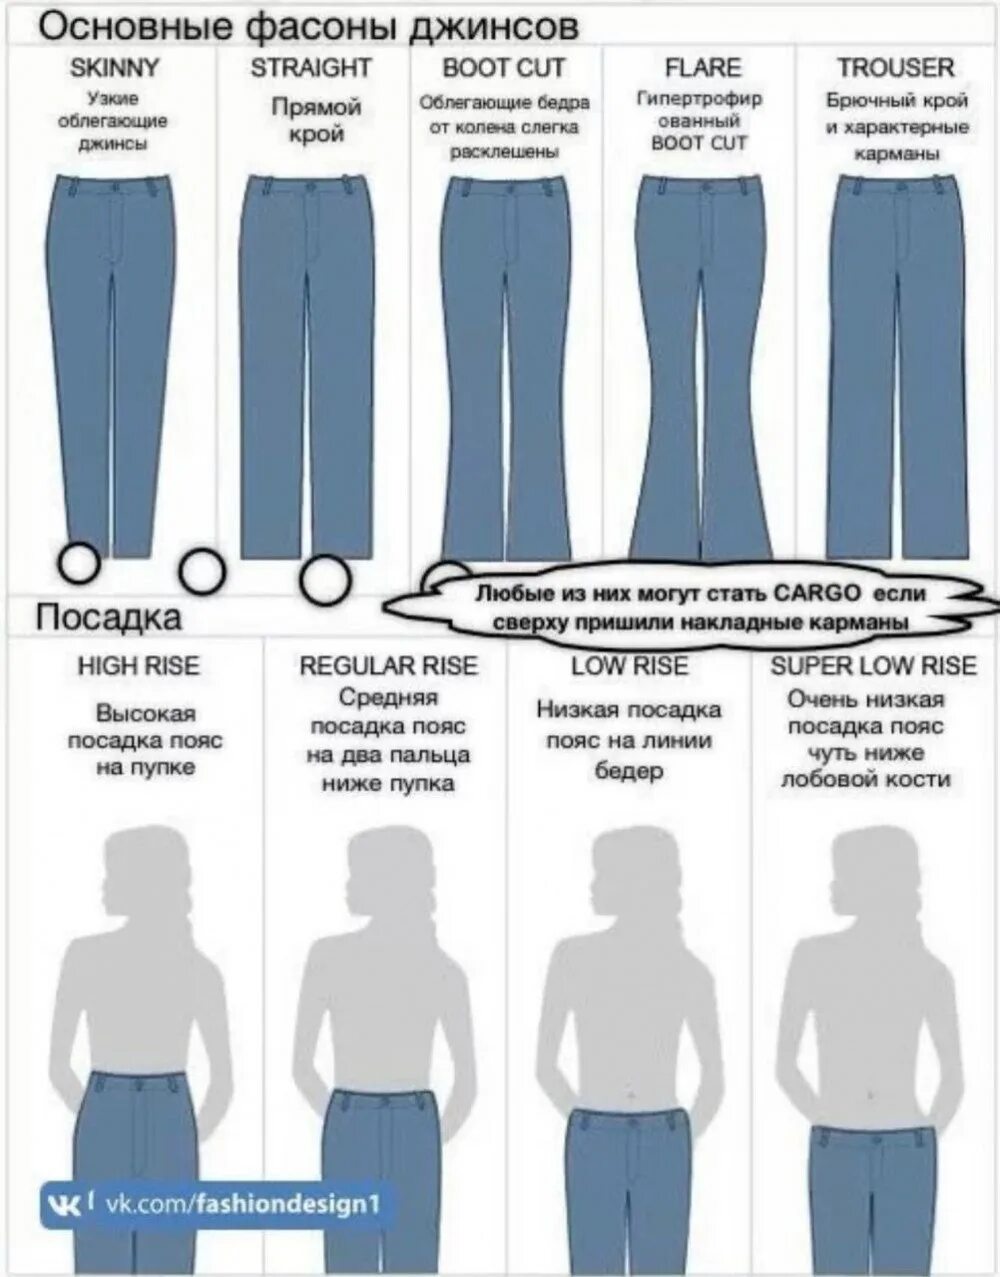 Типы джинс. Форма джинс название. Классификация джинсов женских. Наименования фасонов женских брюк.